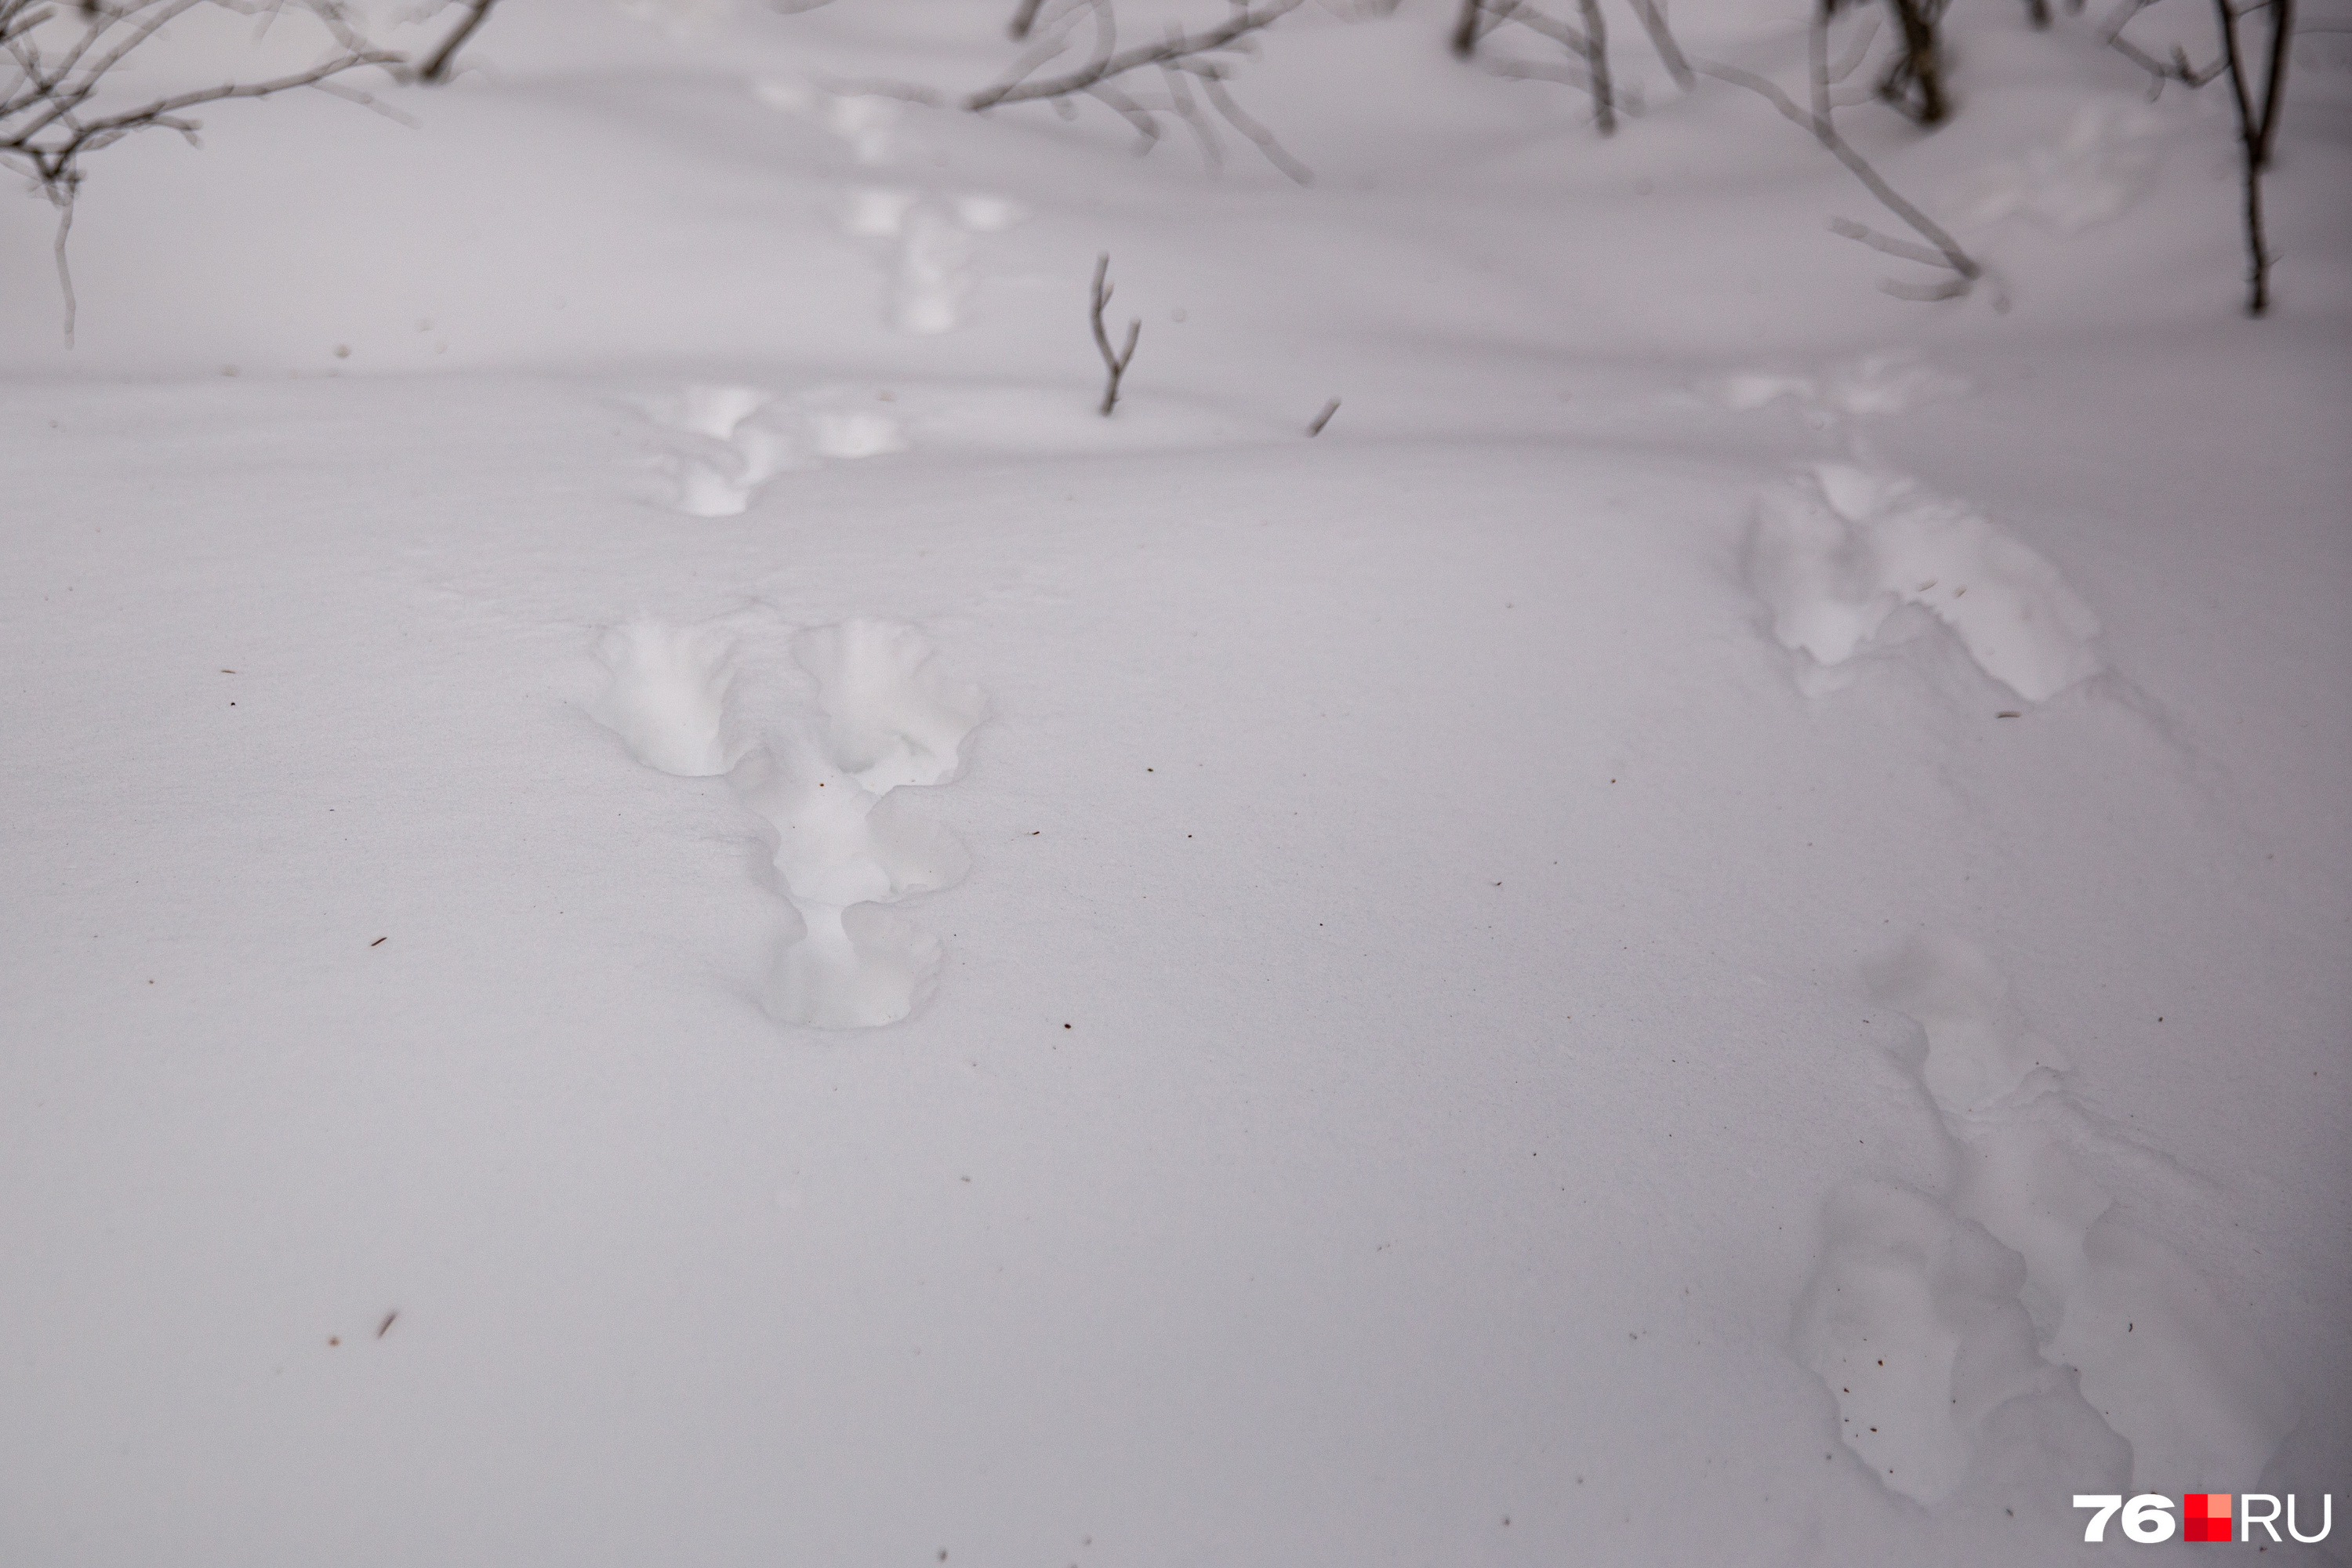 Заячьи следы. Заячий след на снегу направление. Как выглядят заячьи следы. Фото заячьей следов фото. Не заячий след не распечатанное письмо